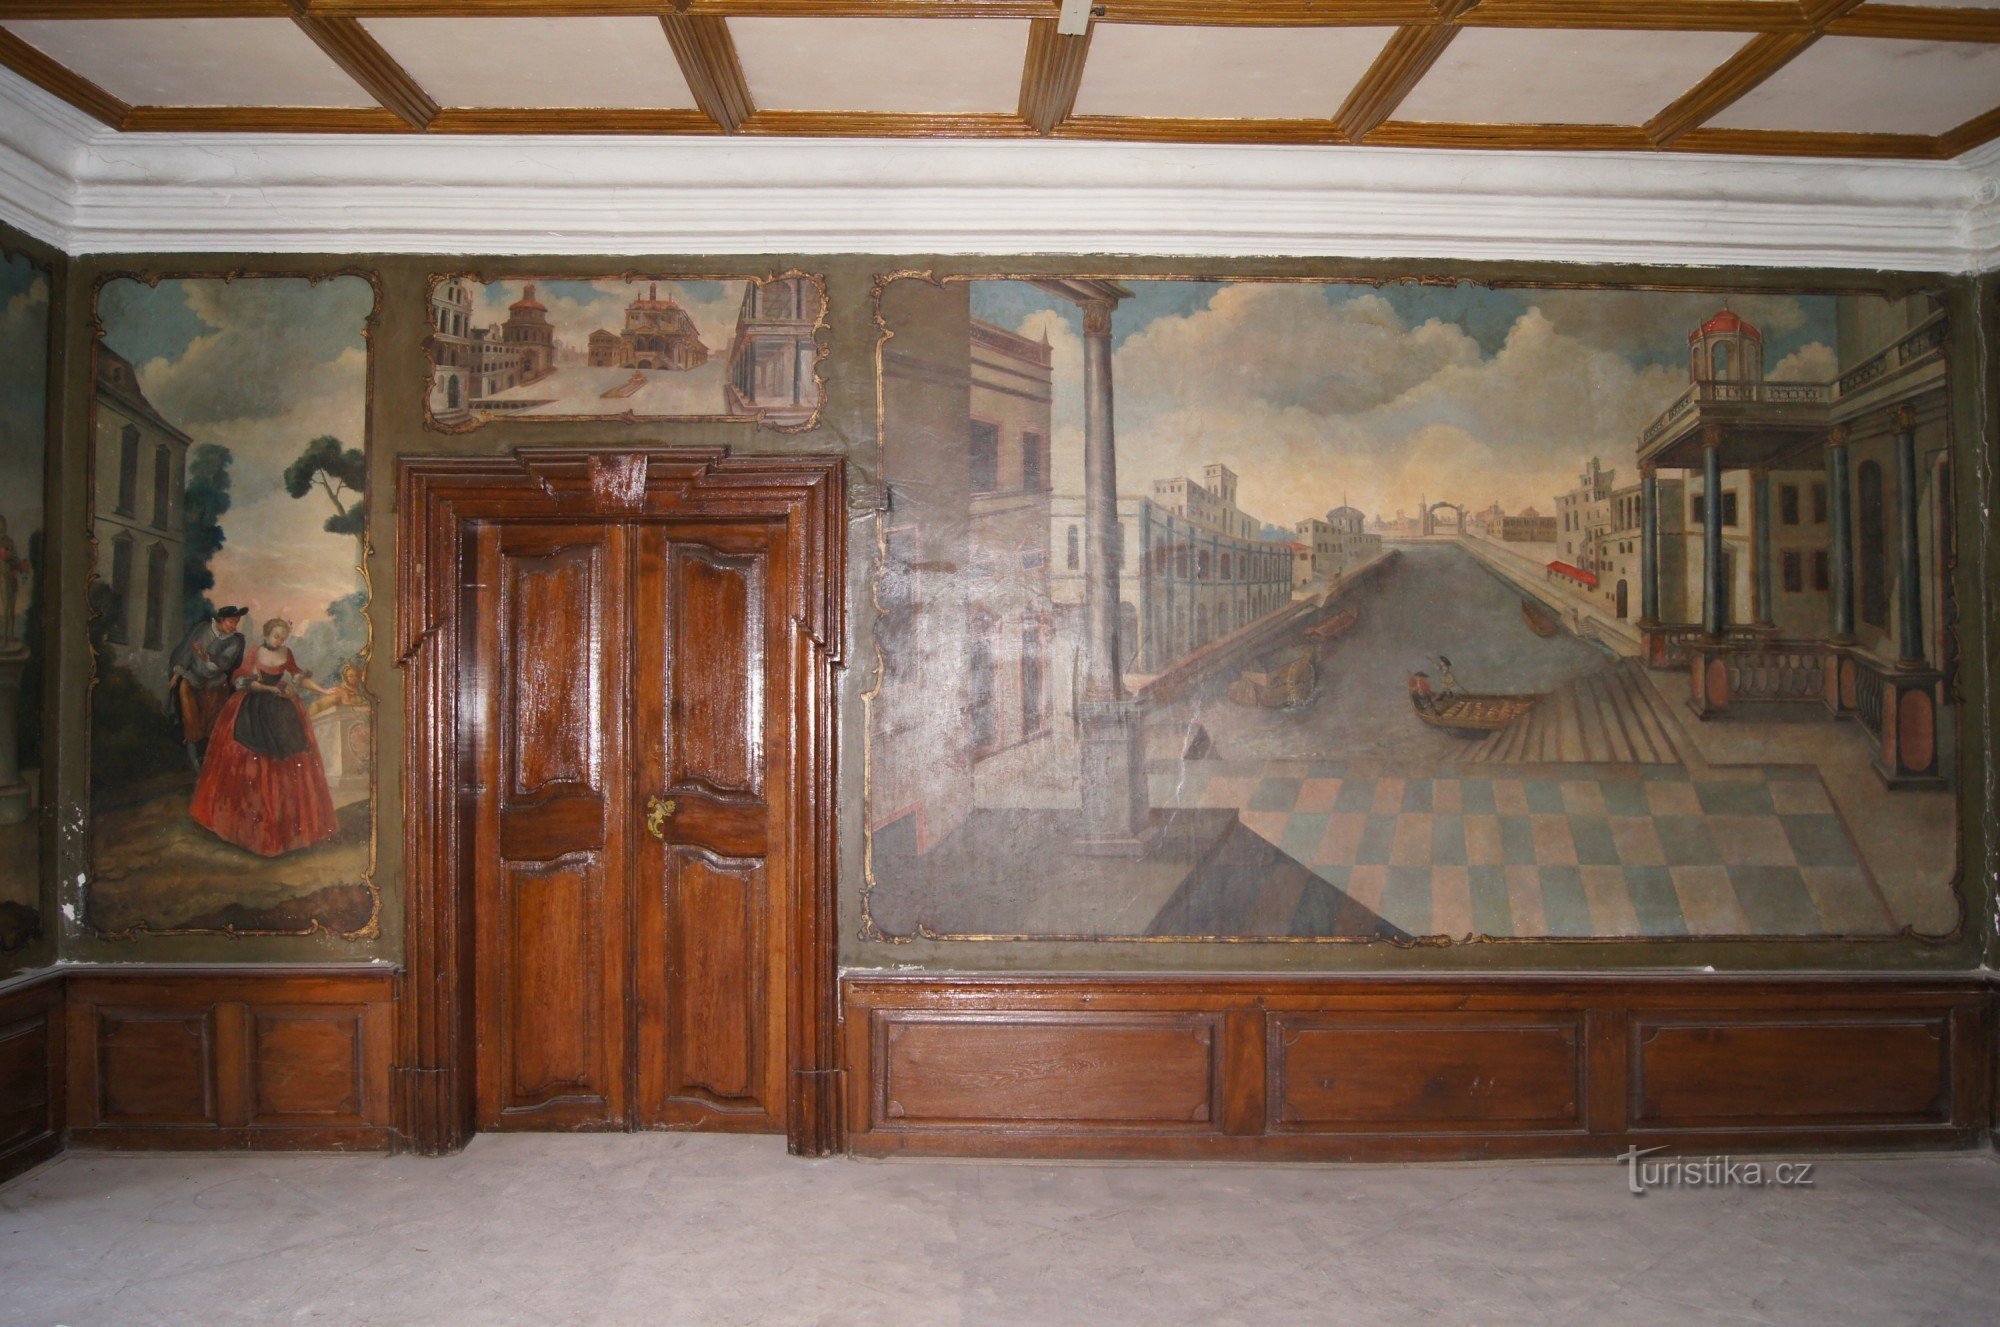 τοιχογραφίες στην κύρια αίθουσα του κάστρου